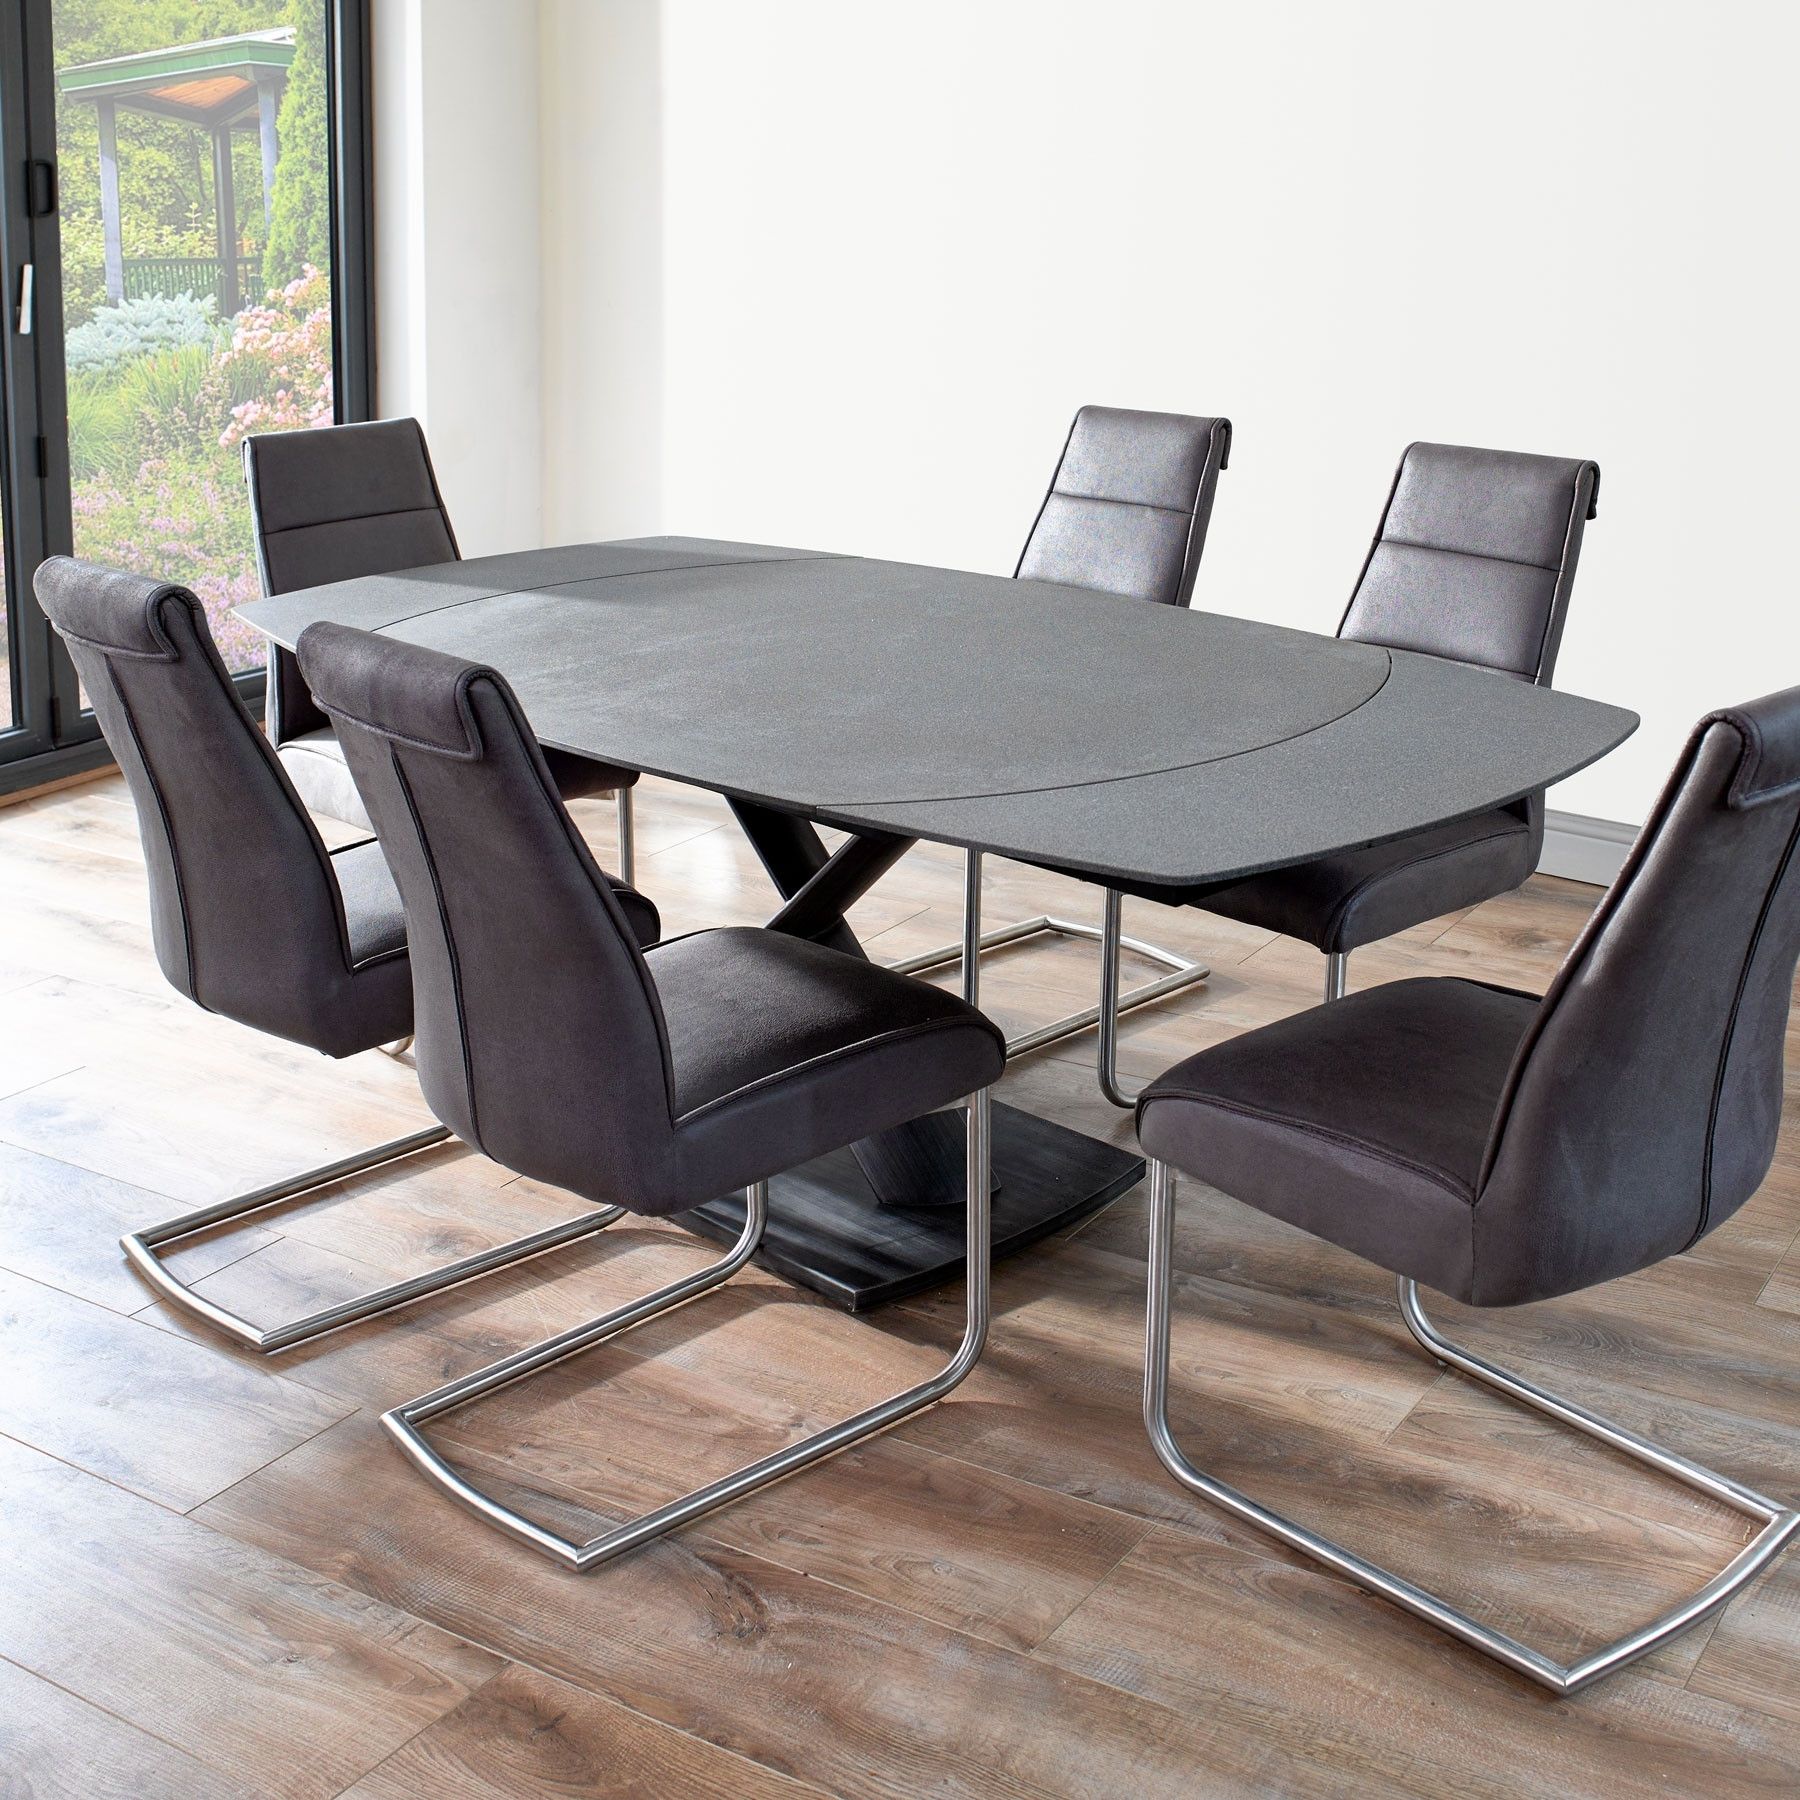 Popular Domasco Revolving Extending Dining Table & 6 Chairs With Extendable Dining Tables And 6 Chairs (Photo 1 of 25)